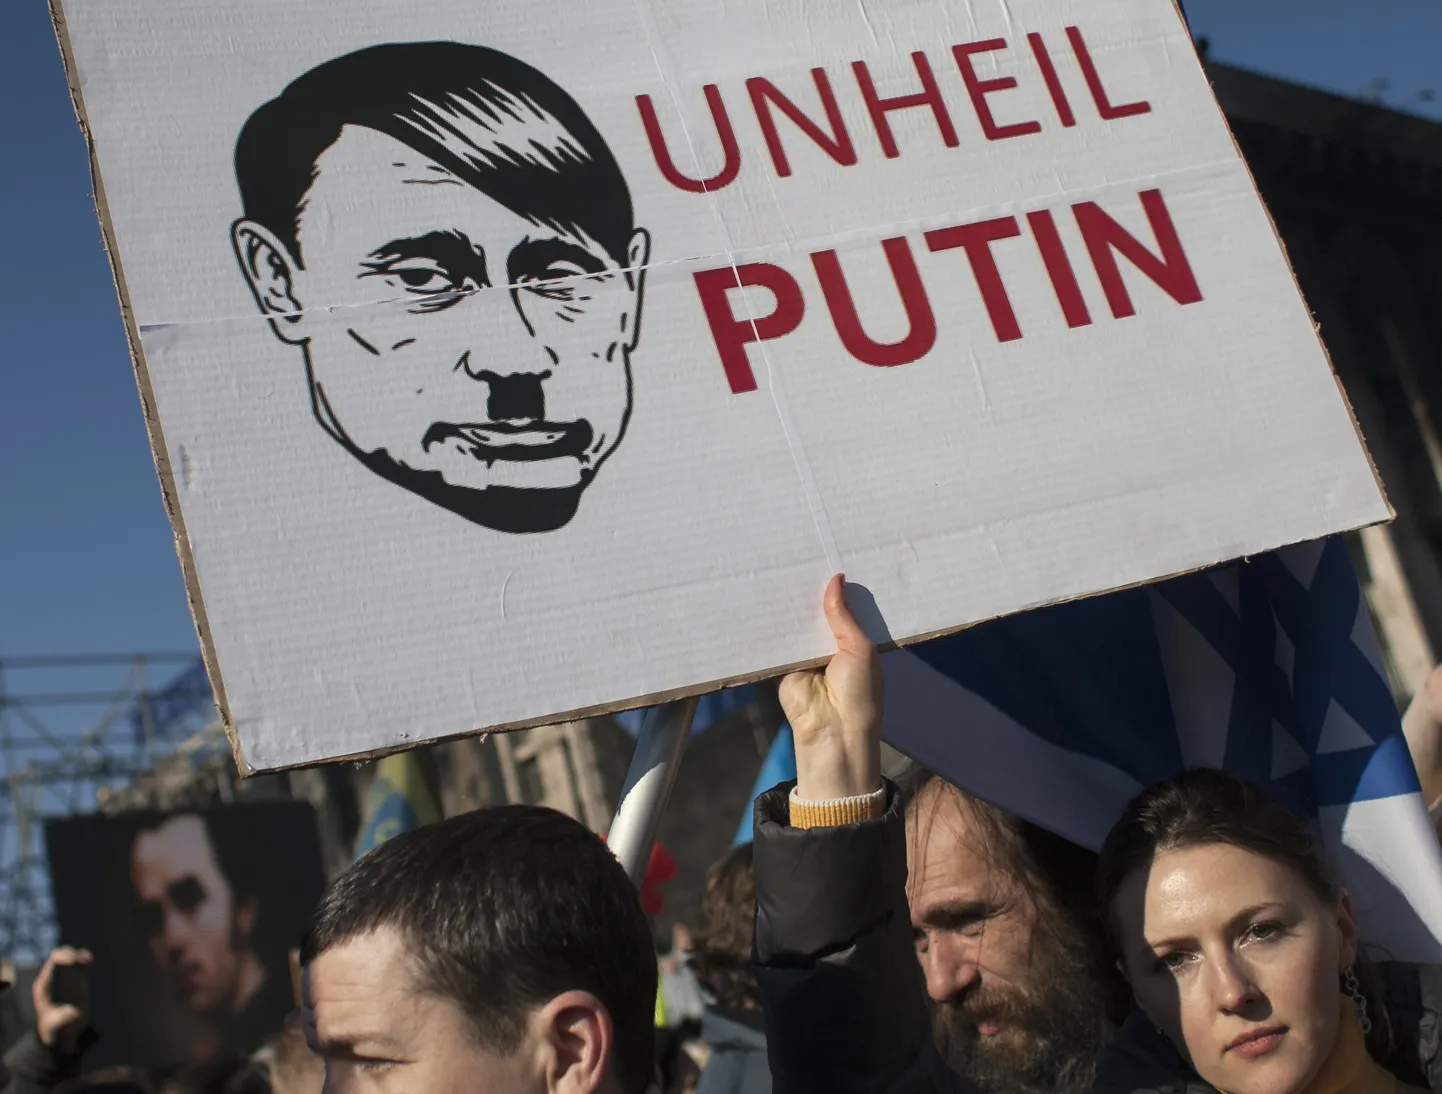 Venemaa president Vladimir Putinit on plakatil kujutatud Adolf Hitlerina.